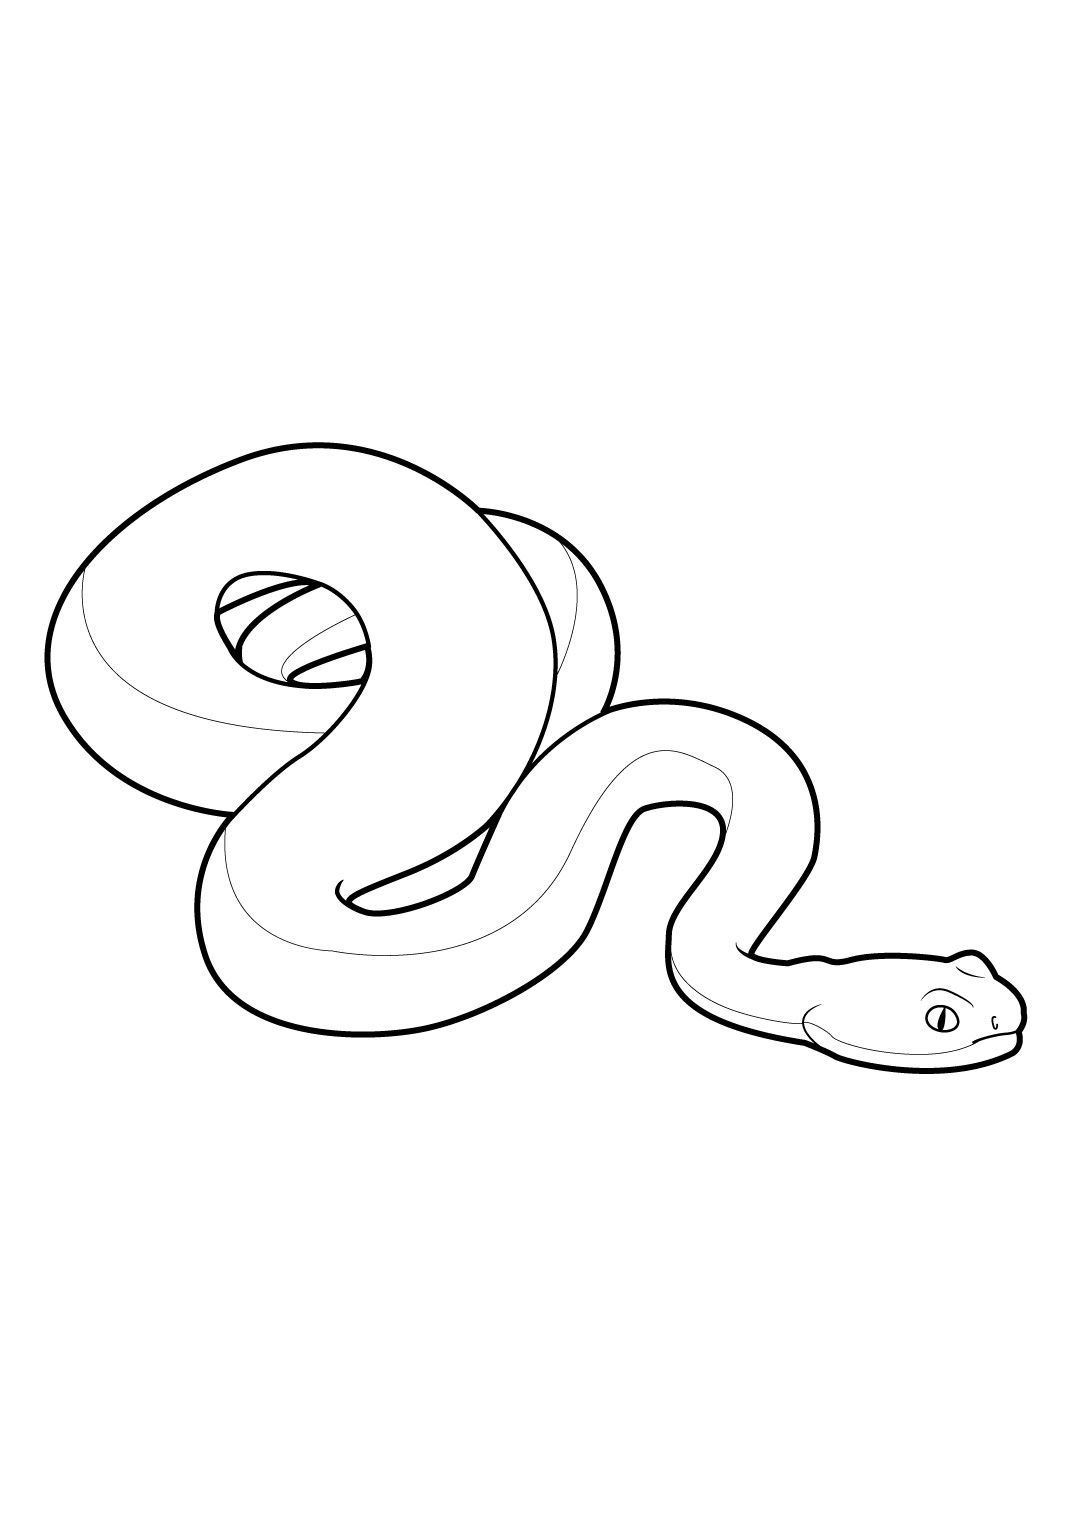 Coloriage Serpent 4 - Coloriage Serpents - Coloriages Animaux destiné Serpent S Dessin